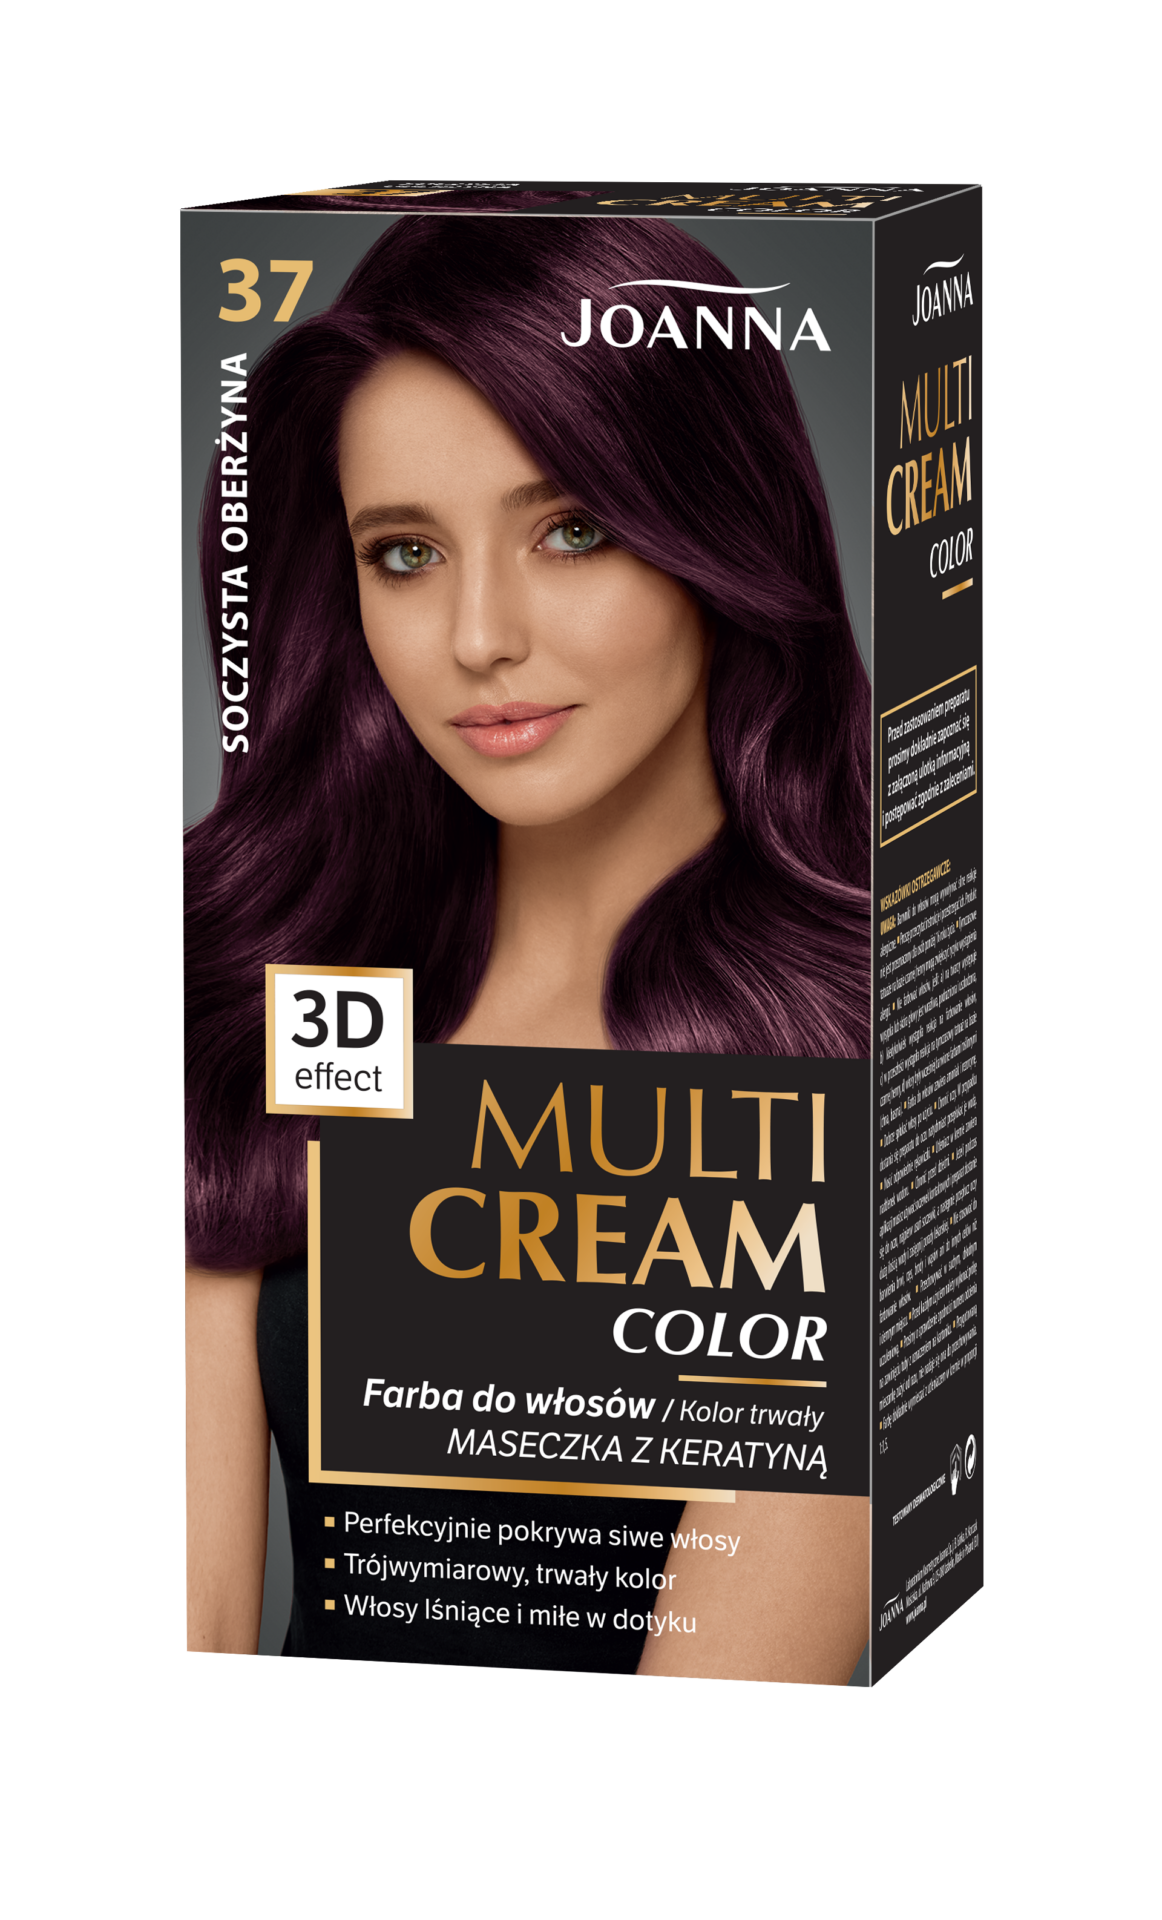 Trwała farba do włosów Joanna Multi Cream Color w odcieniu soczysta oberżyna nr 37